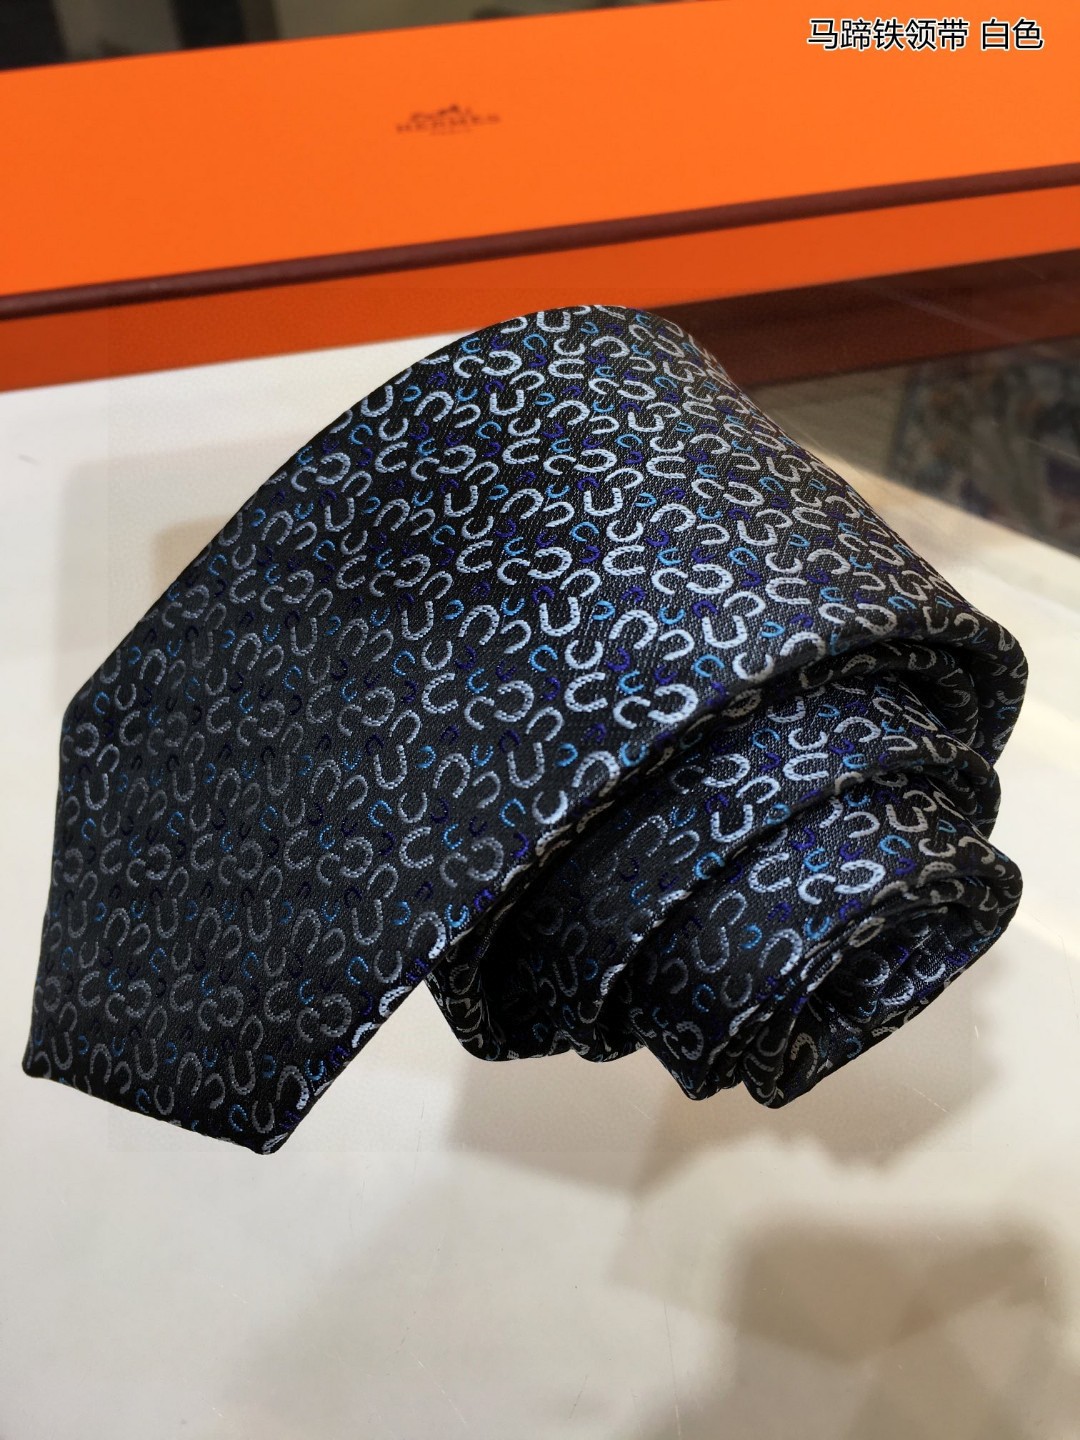 男士新款领带系列马蹄铁领带稀有H家每年都有一千条不同印花的领带面世从最初的多以几何图案表现骑术活动为主到